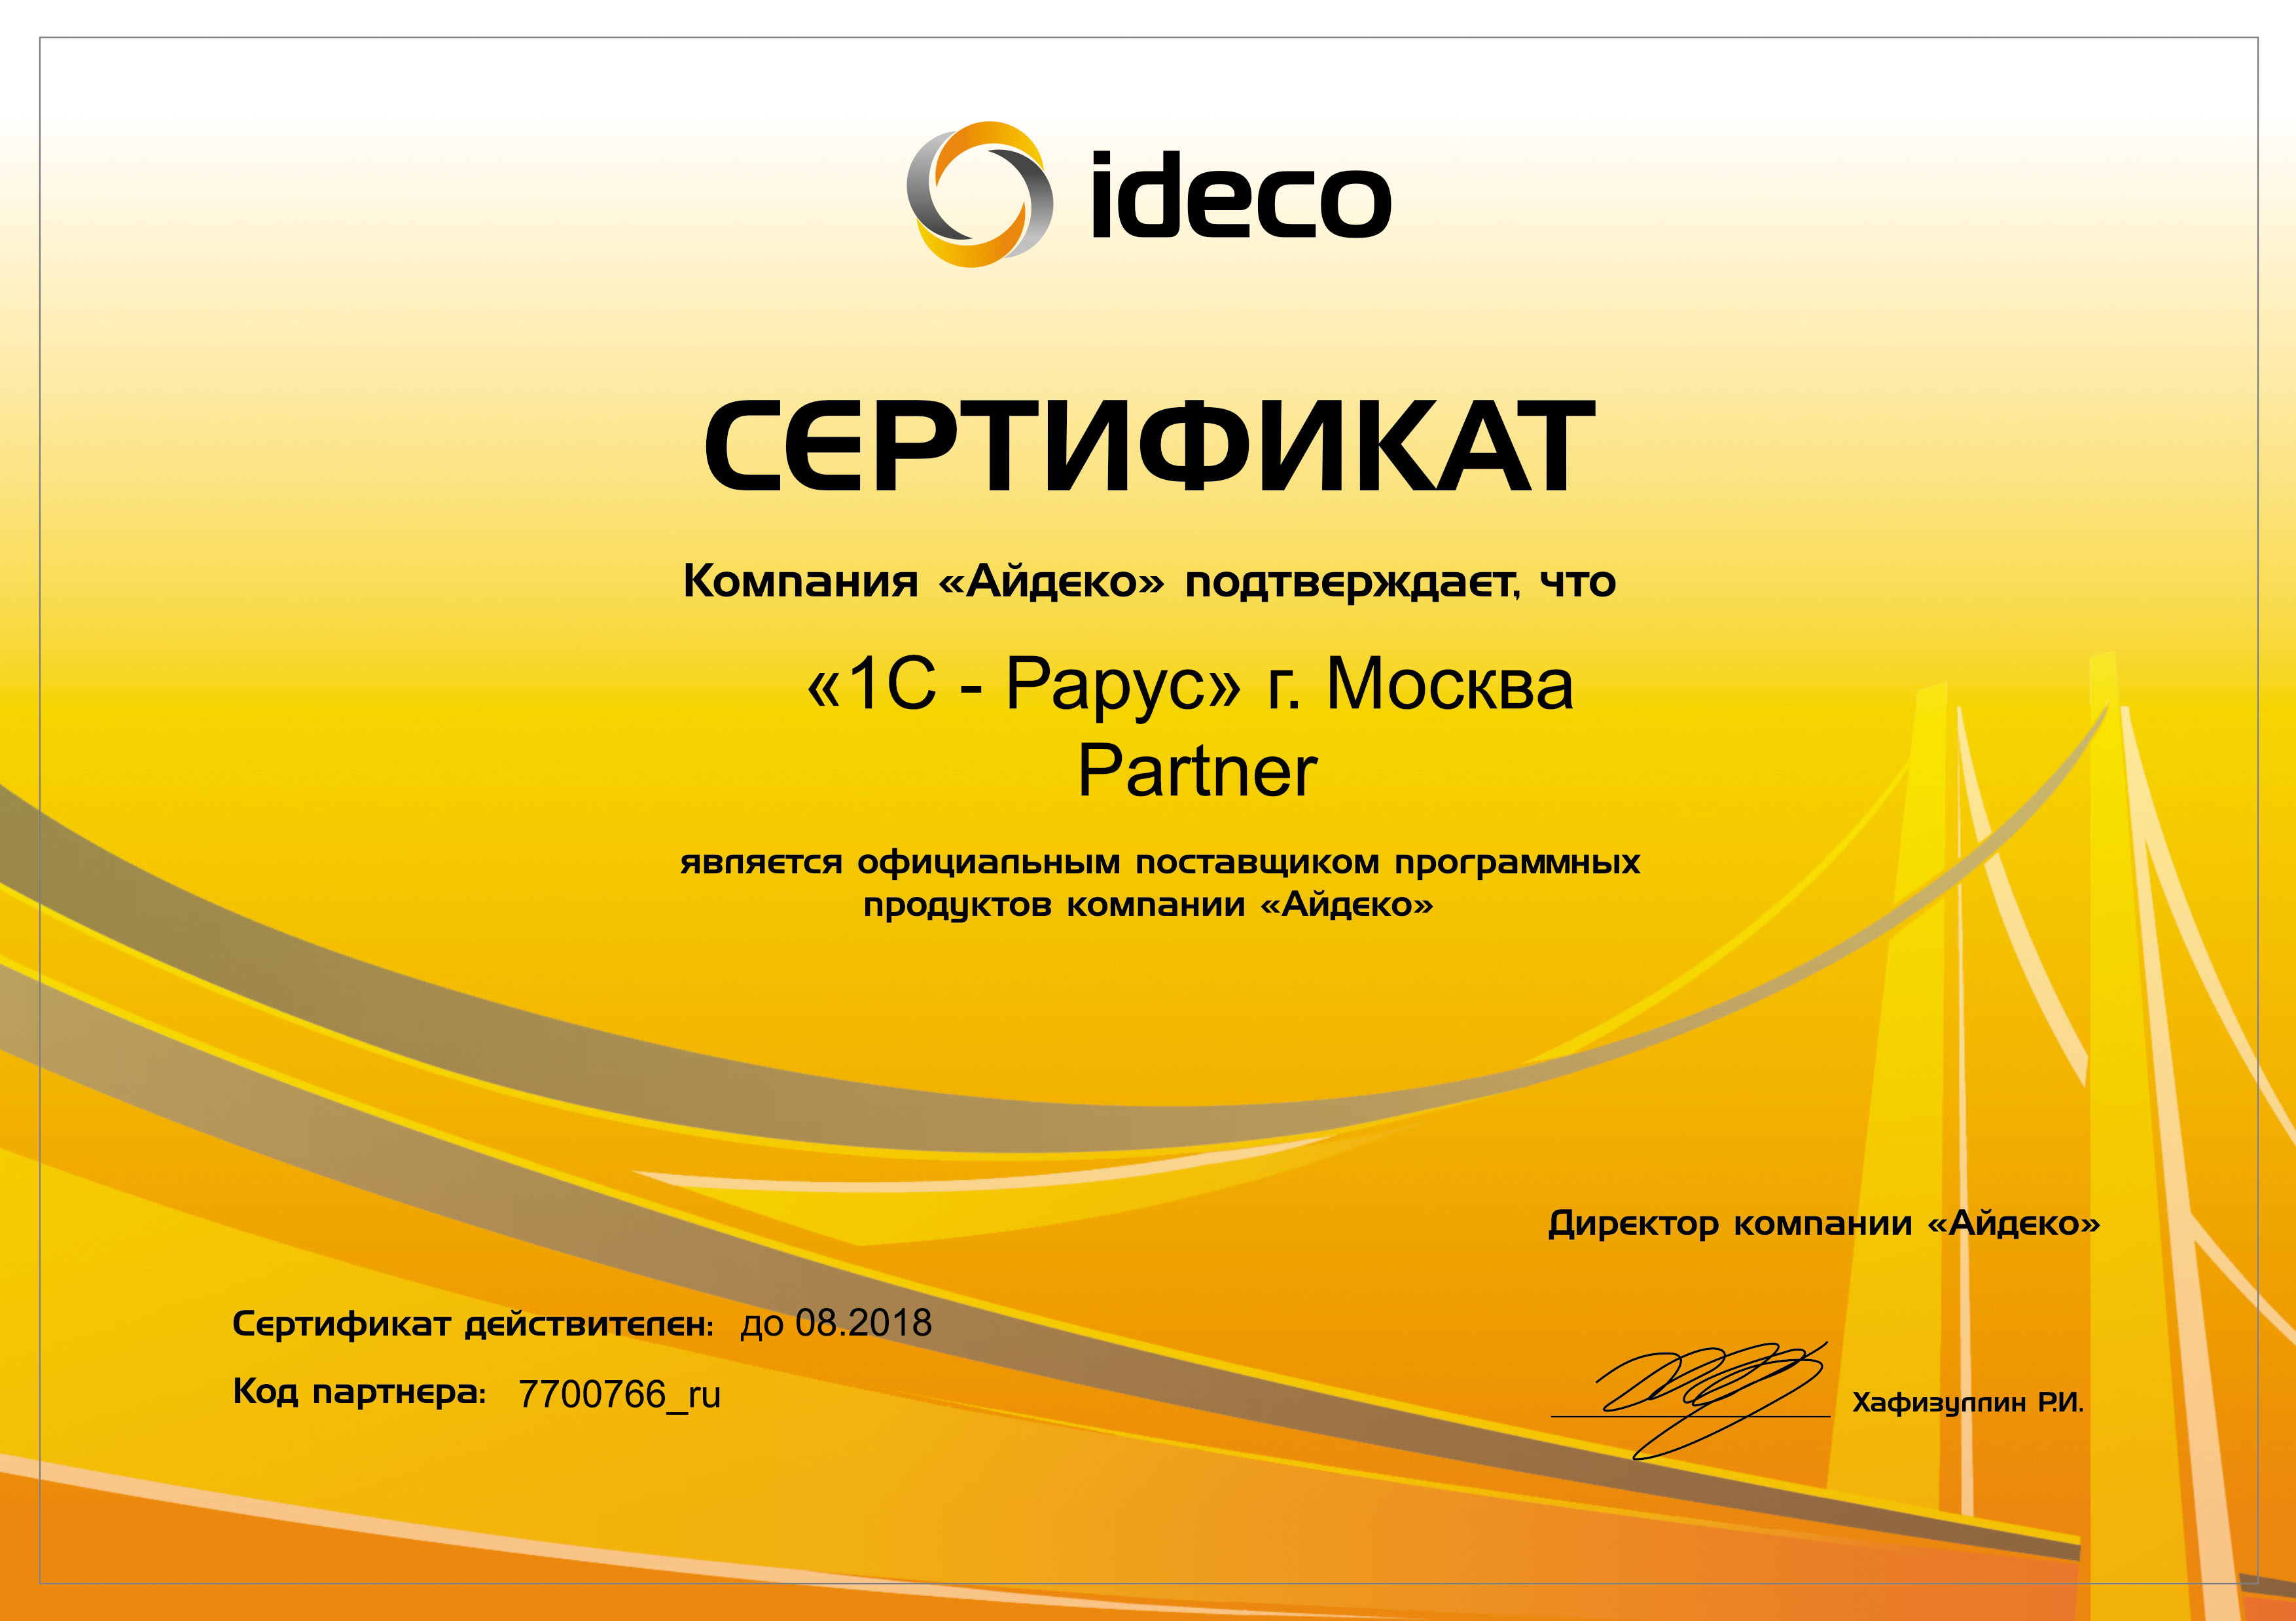 Официальный поставщик программных продуктов компании «Айдеко»